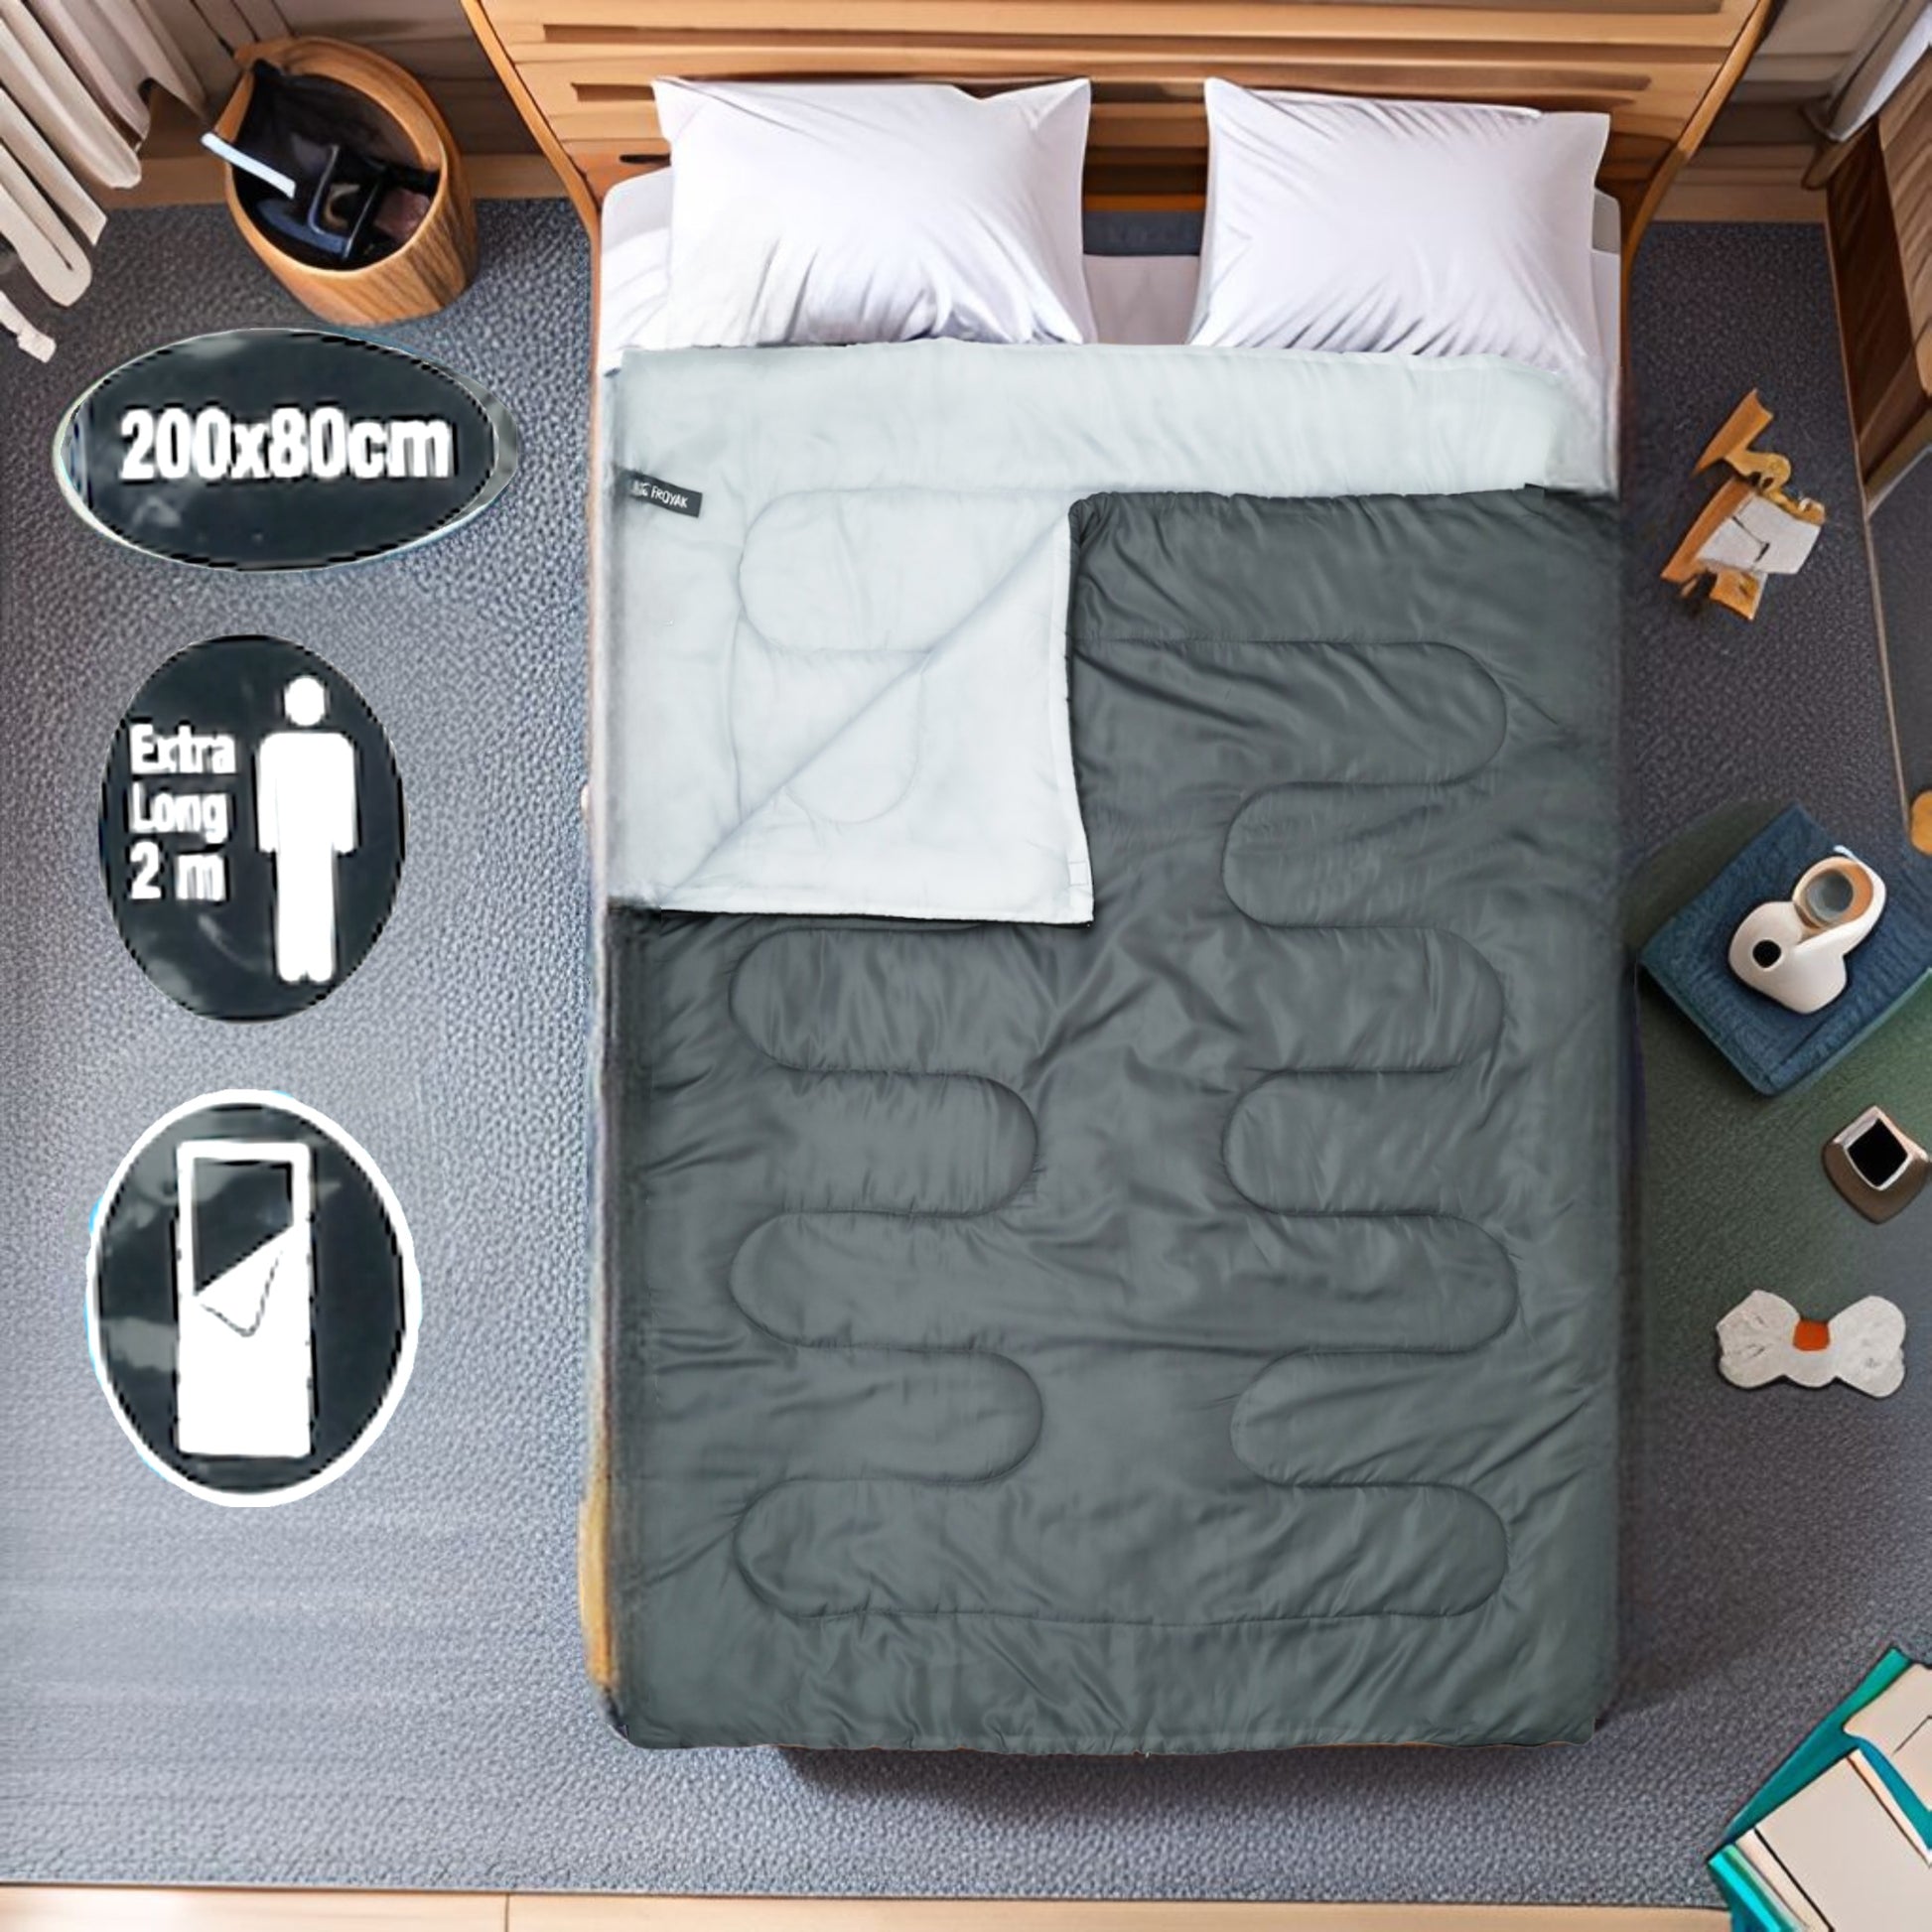 Bettdecke 2.0 für Heizungsausfall, Daunen Schlafsack für 2 Personen bis - 8° strapazierfähig, waschmaschinenfest